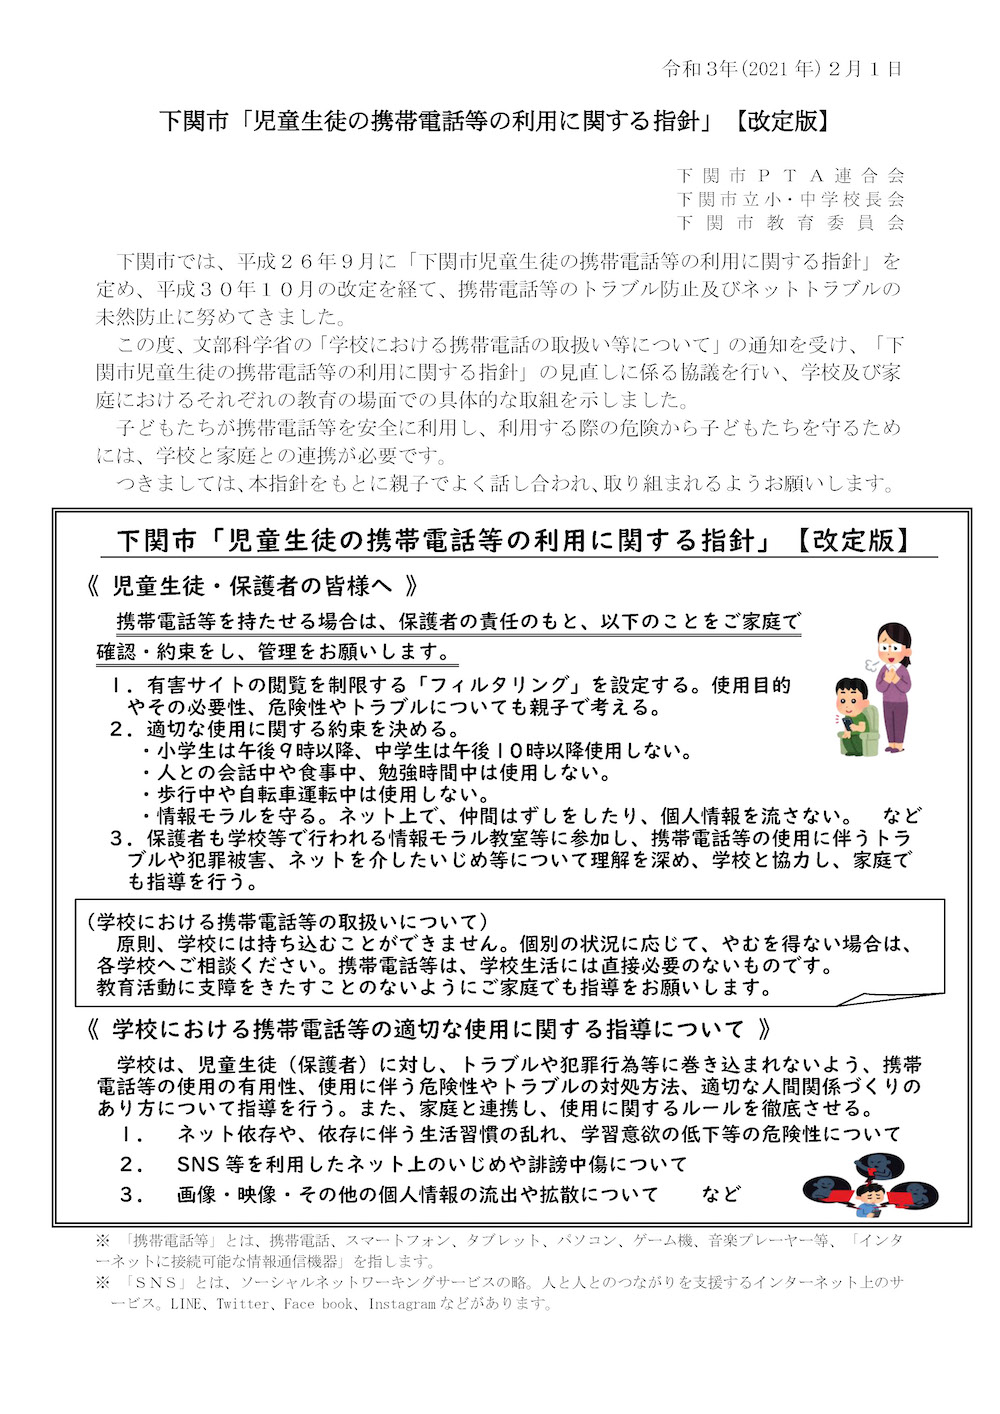 下関市「児童生徒の携帯電話の利用に関する指針」（令和3年2月1日 改定）